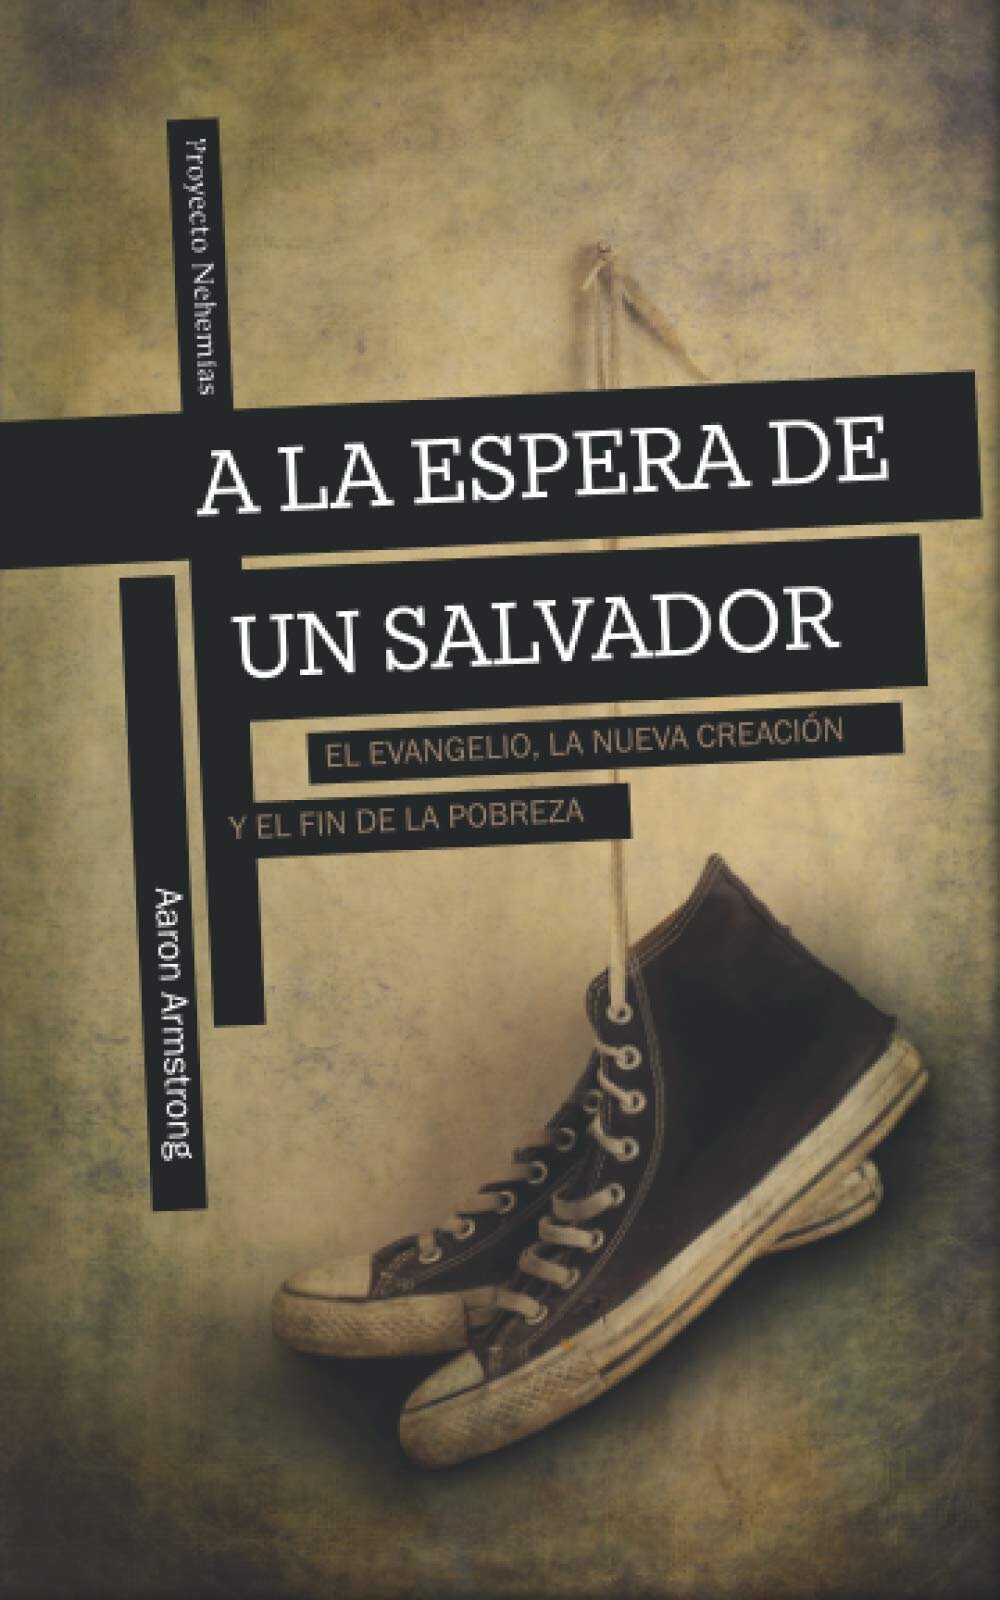 A la espera de un Salvador: El Evangelio, la nueva creación, y el fin de la pobreza